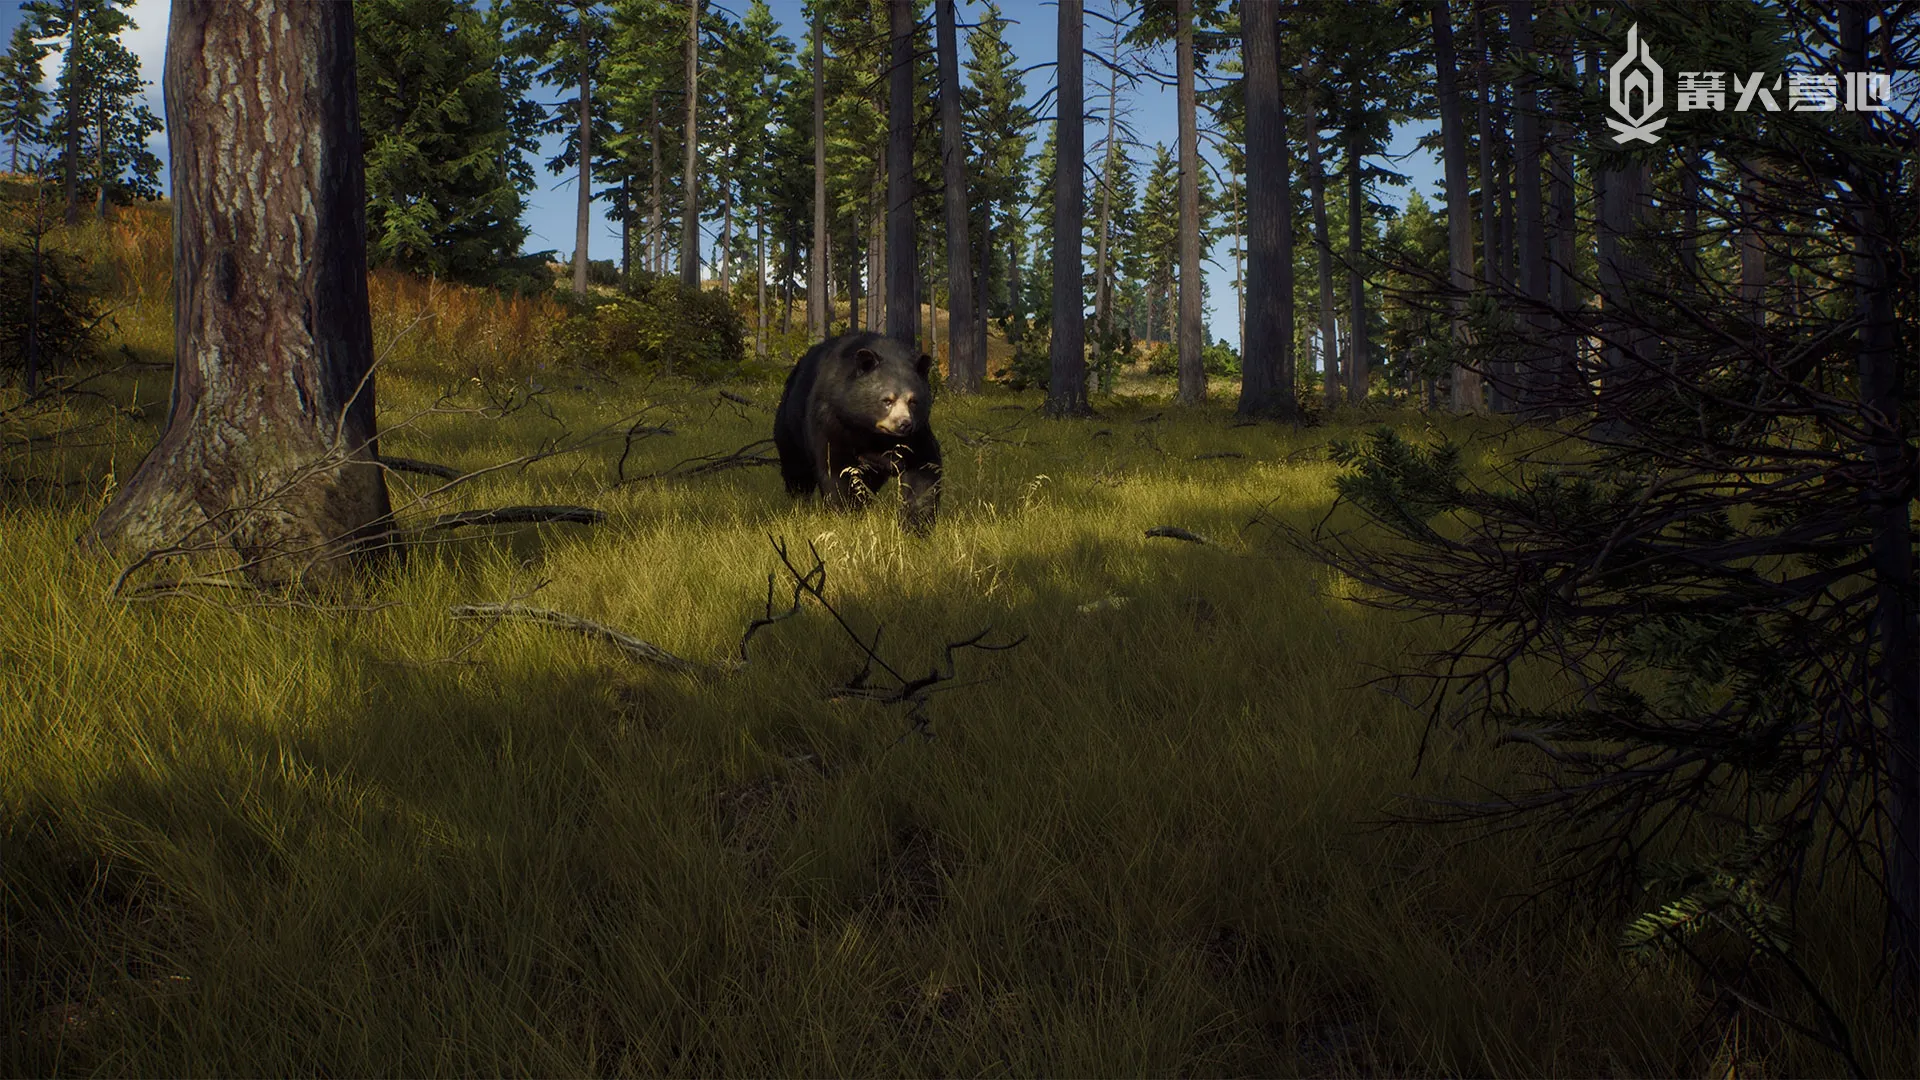 開放世界狩獵遊戲《獵人之路》8 月登陸 PS5/SXS/Steam